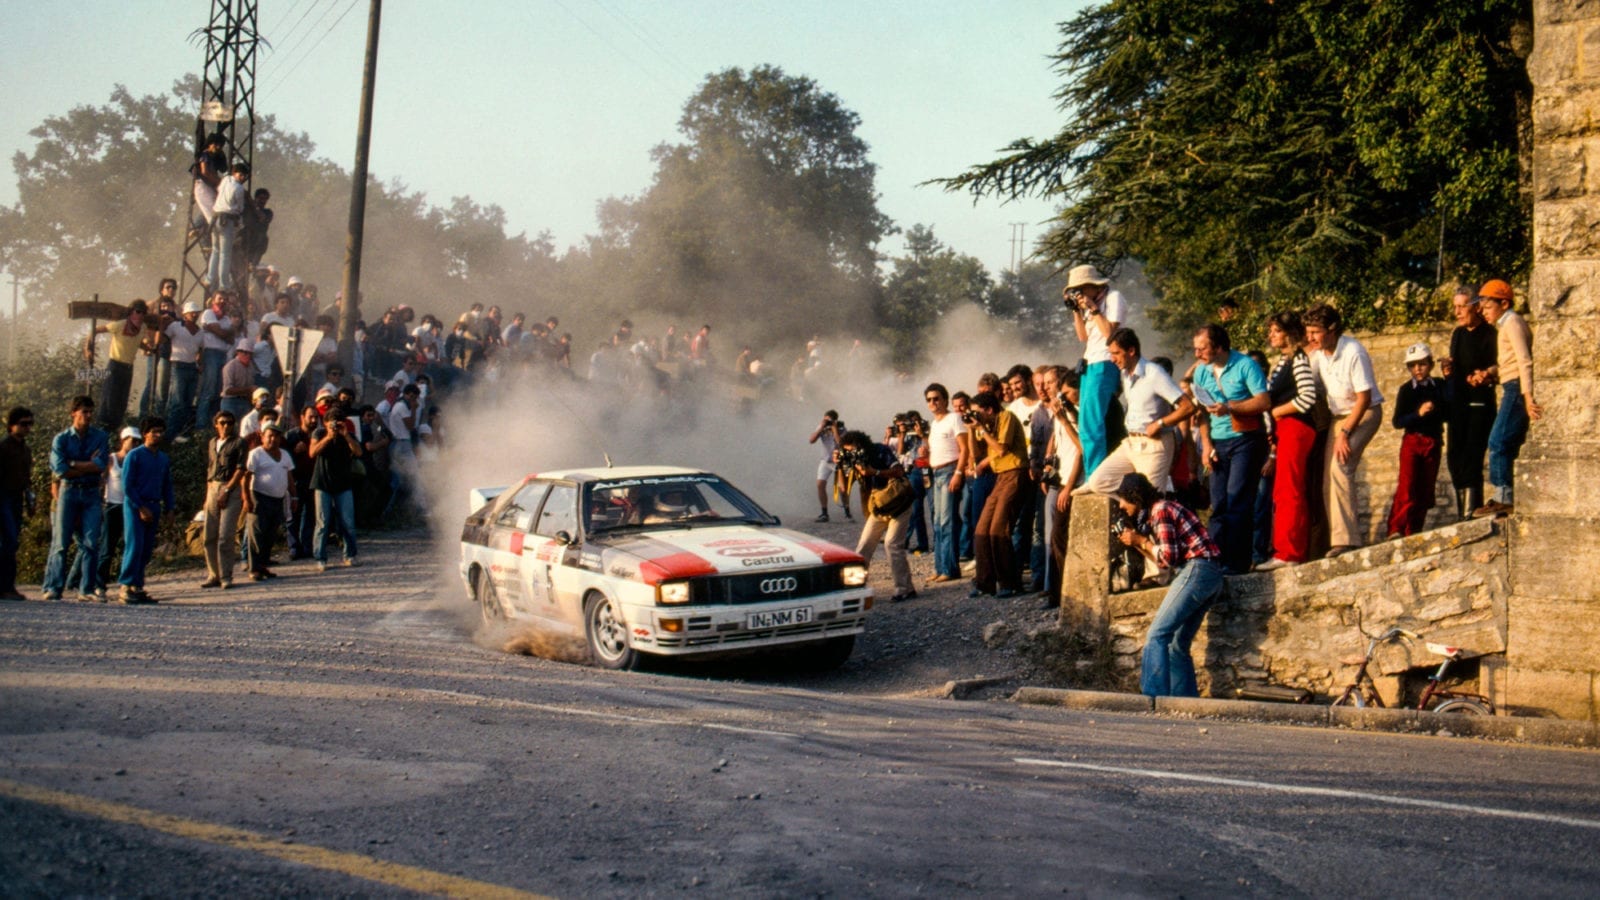 Hannu Mikkola on the 1981 San Remo Rally